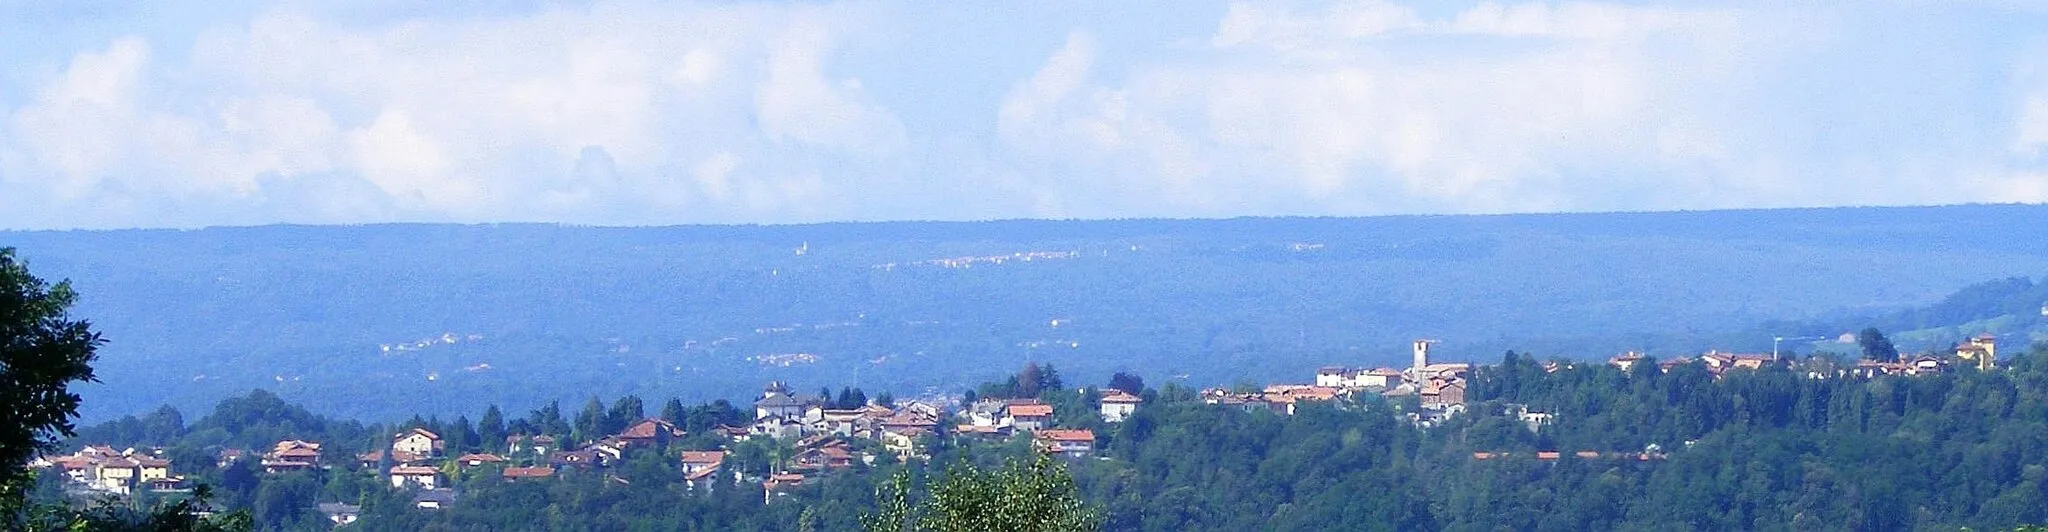 Photo showing: Cossila San Grato (BI, Italy) seen from Vaglio-Colma road